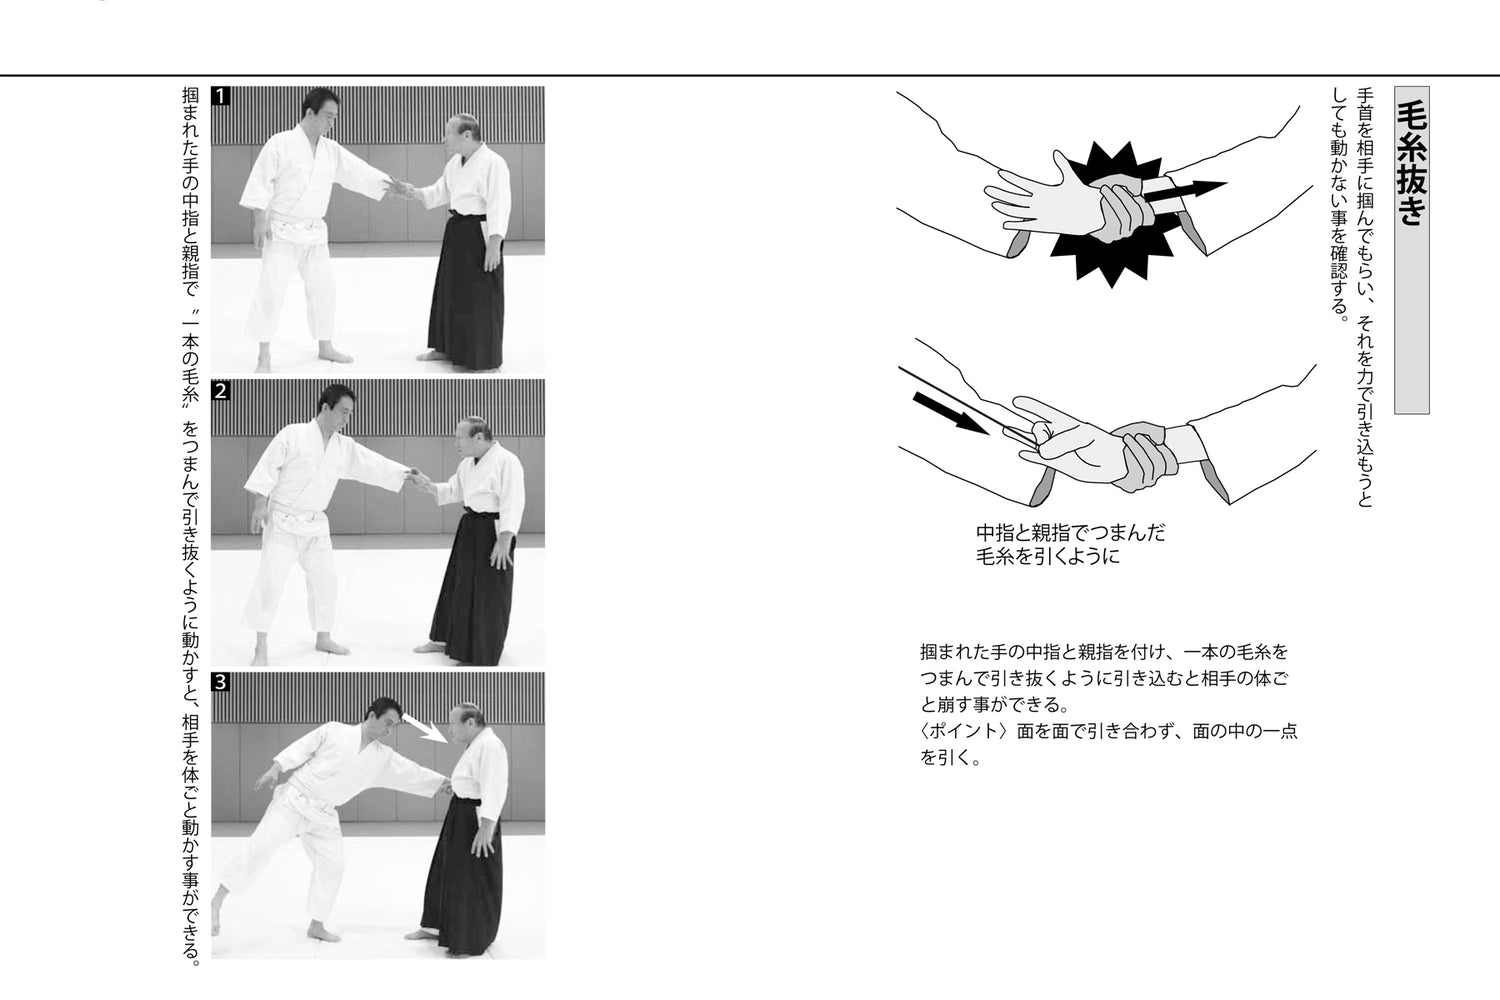 Técnicas de Aiki que cualquiera puede hacer Libro de Yoshiji Yuzawa